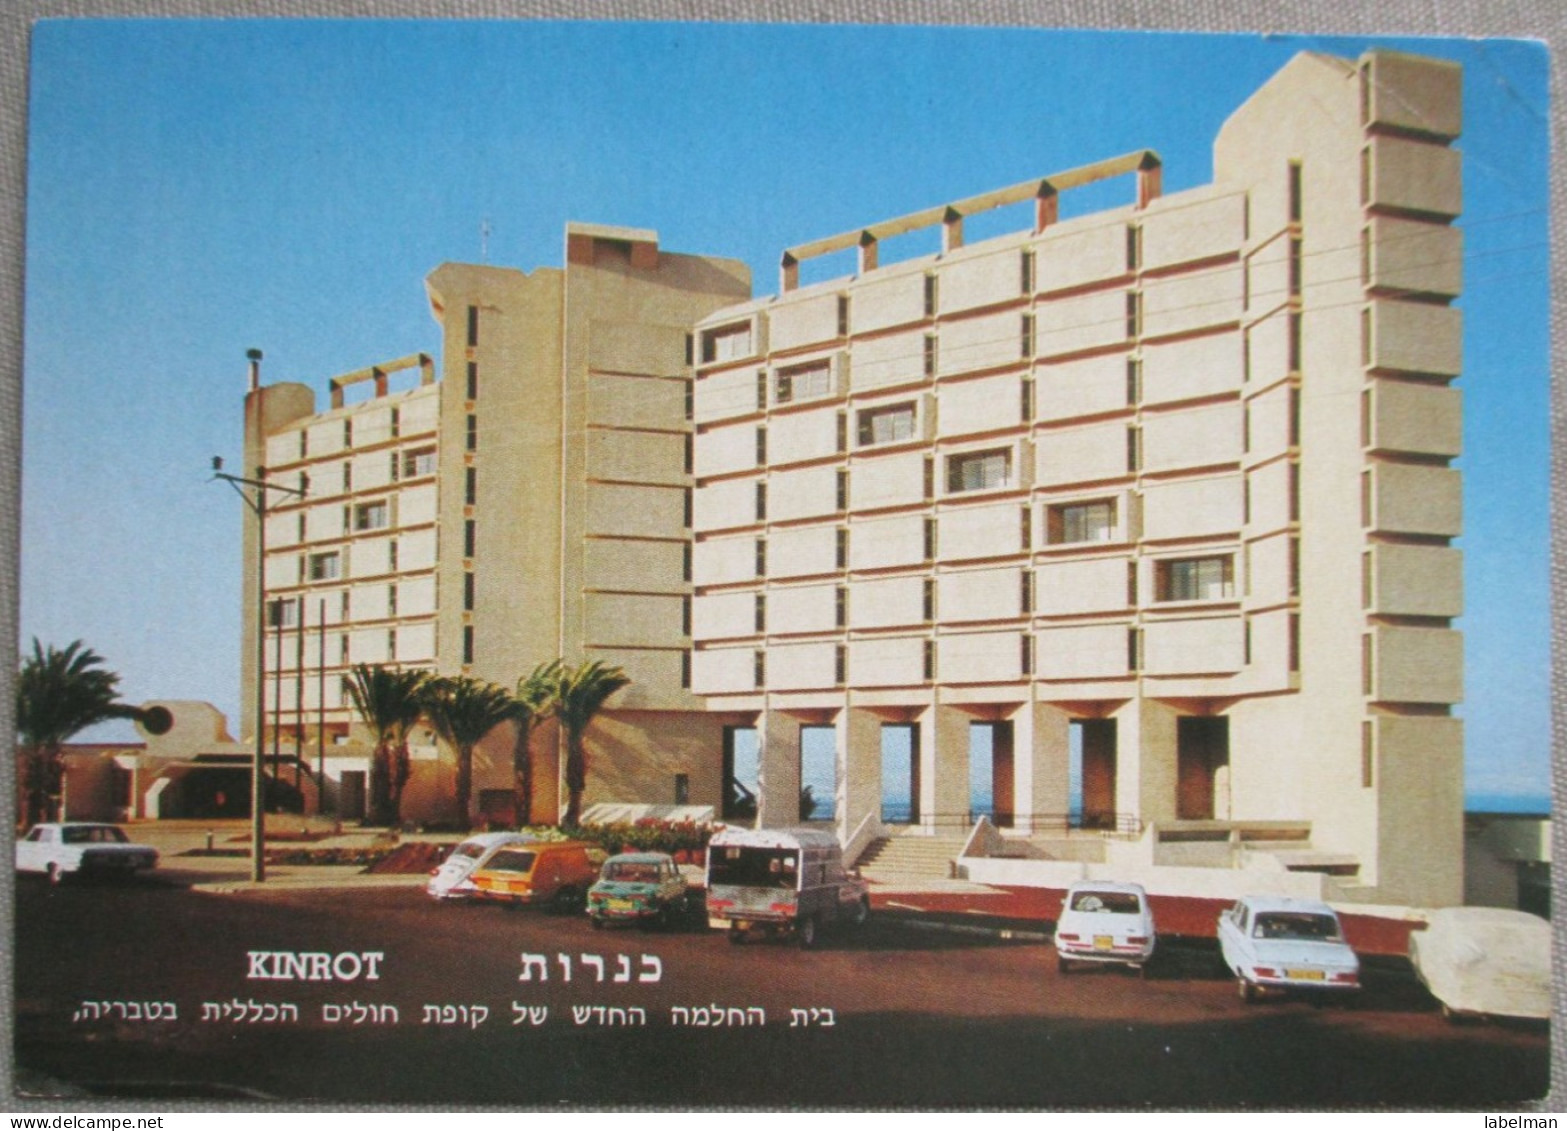 ISRAEL KINROT KUPAT HOLIM TIBERIAS GALILEE SEA KINNERET LAKE HOTEL REST GUEST HOUSE POSTCARD CARTOLINA CARTE POSTALE - Israel